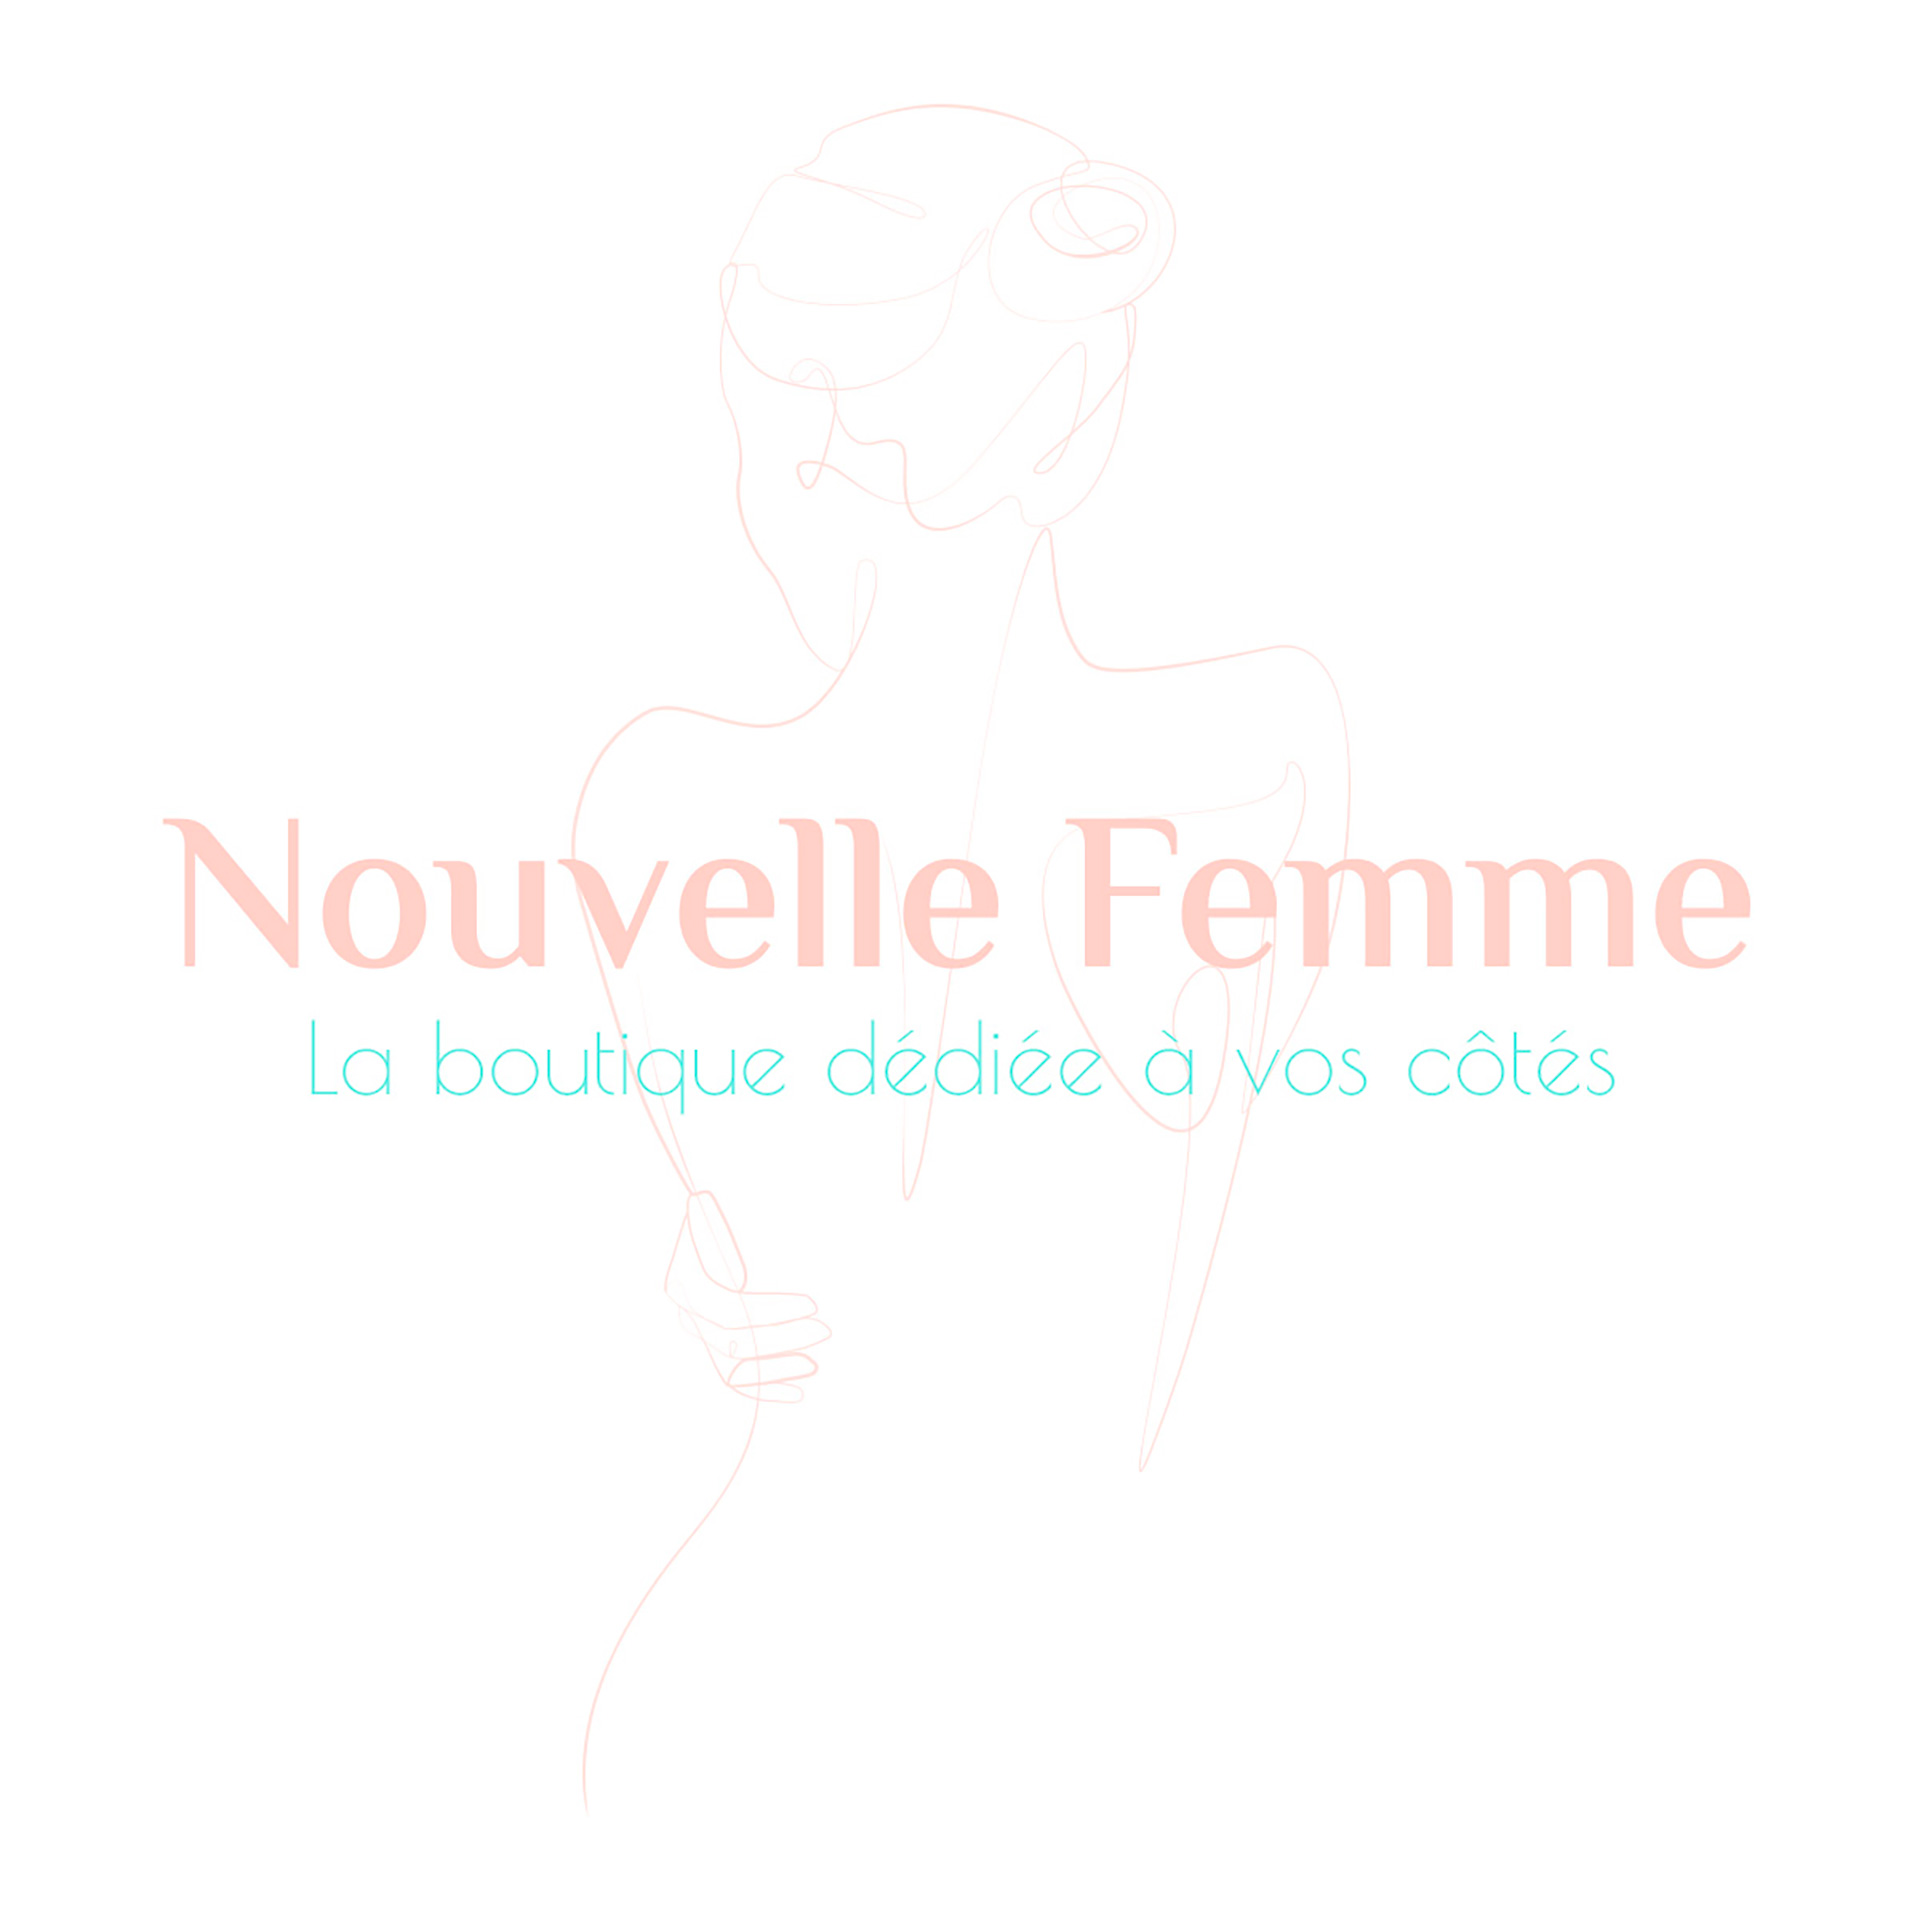 Nouvelle Femme - Handcrafted Paris Nancy